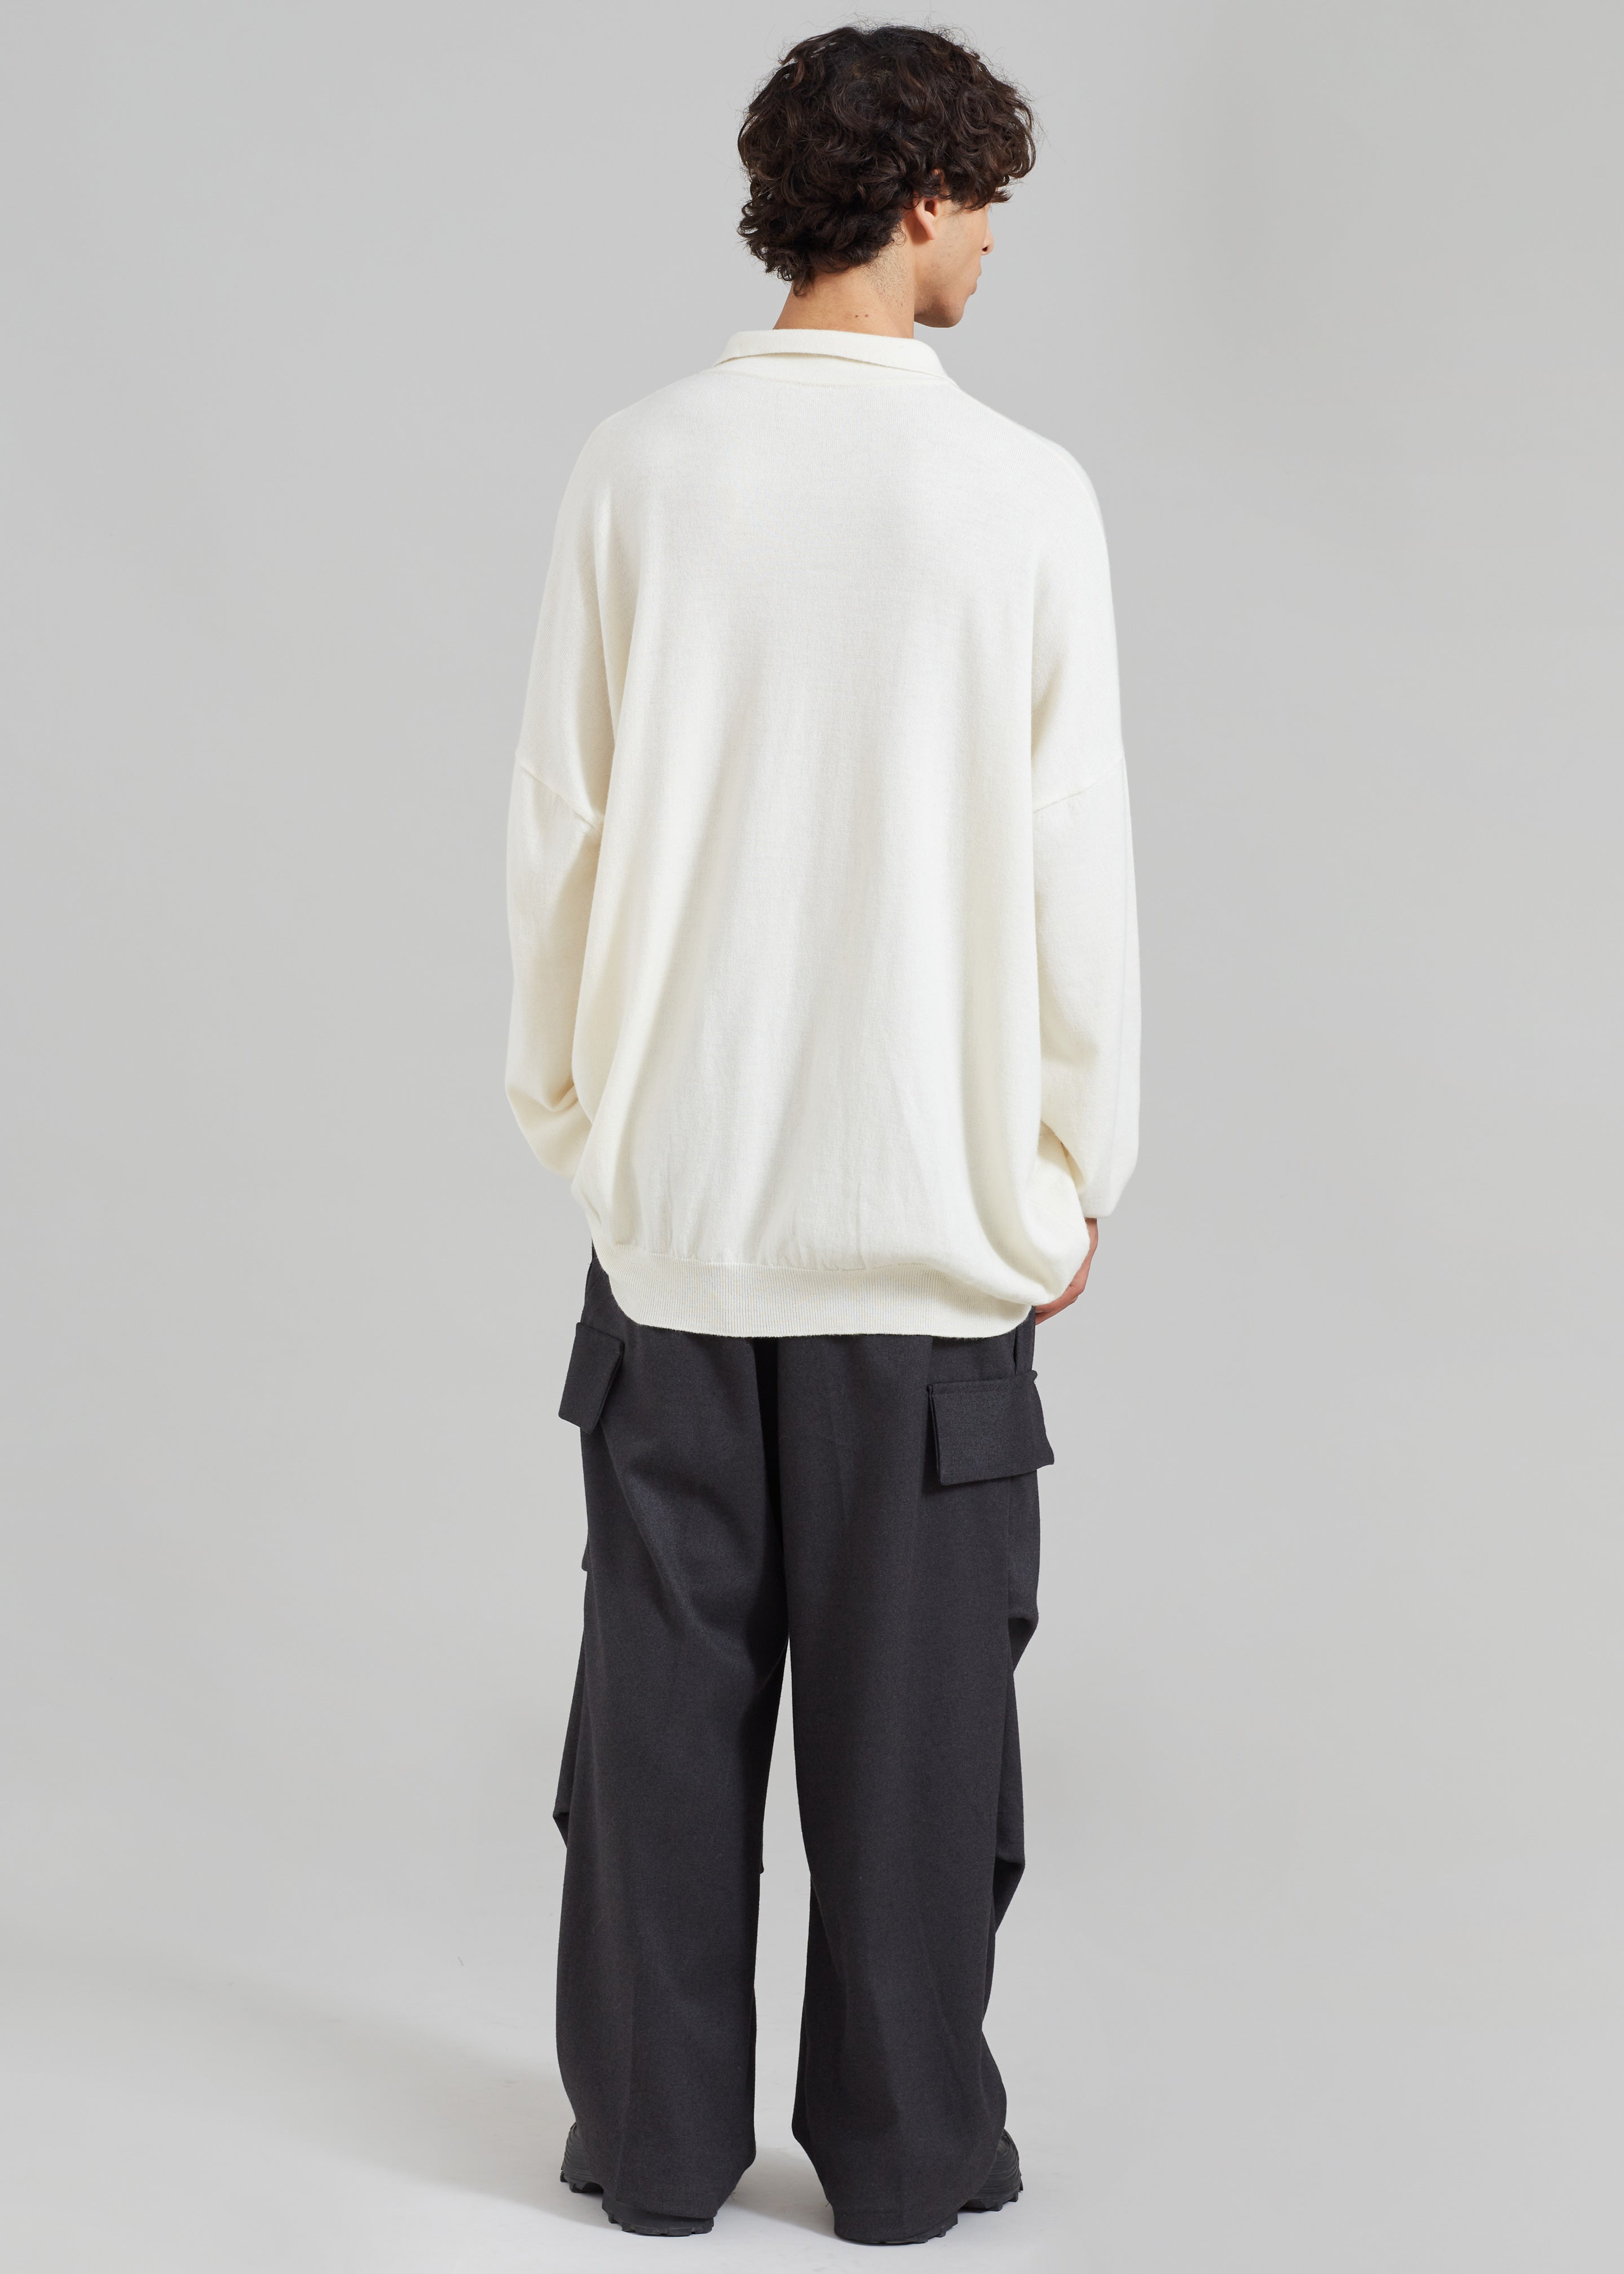 Meriel Polo Sweater - Cream - 11